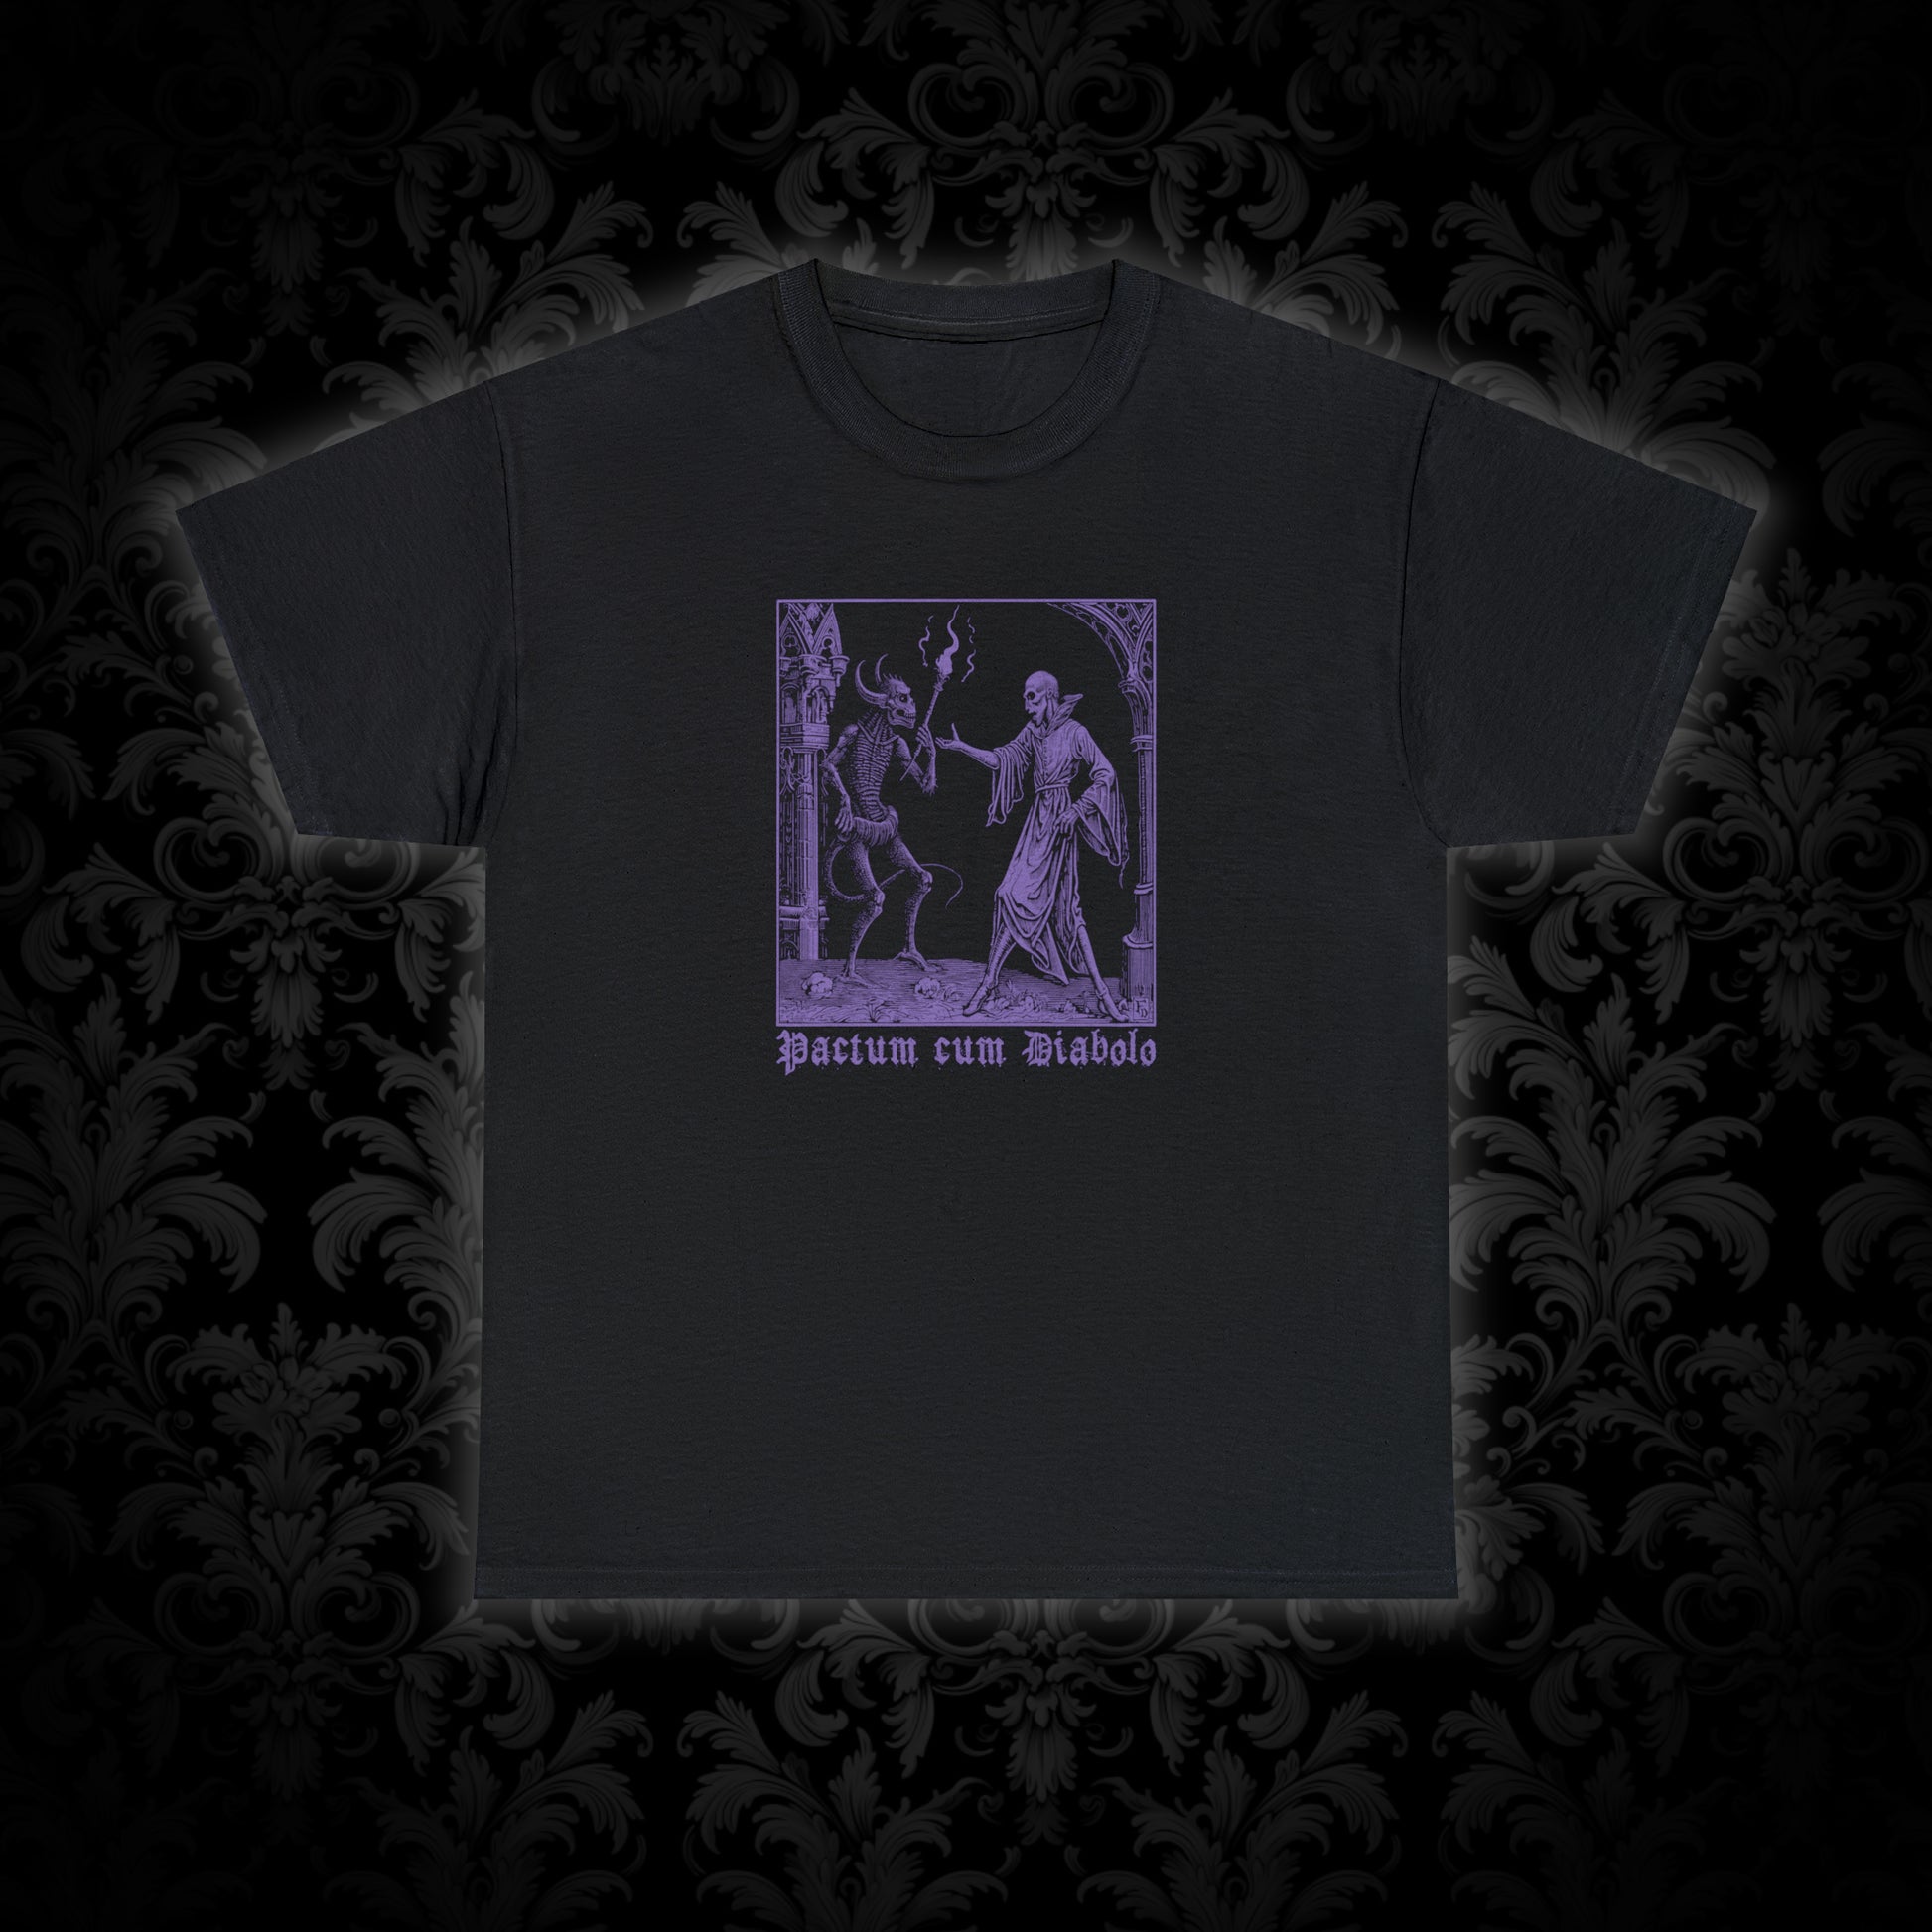 Unisex T-shirt Pactum cum Diabolo in Purple - Frogos Design